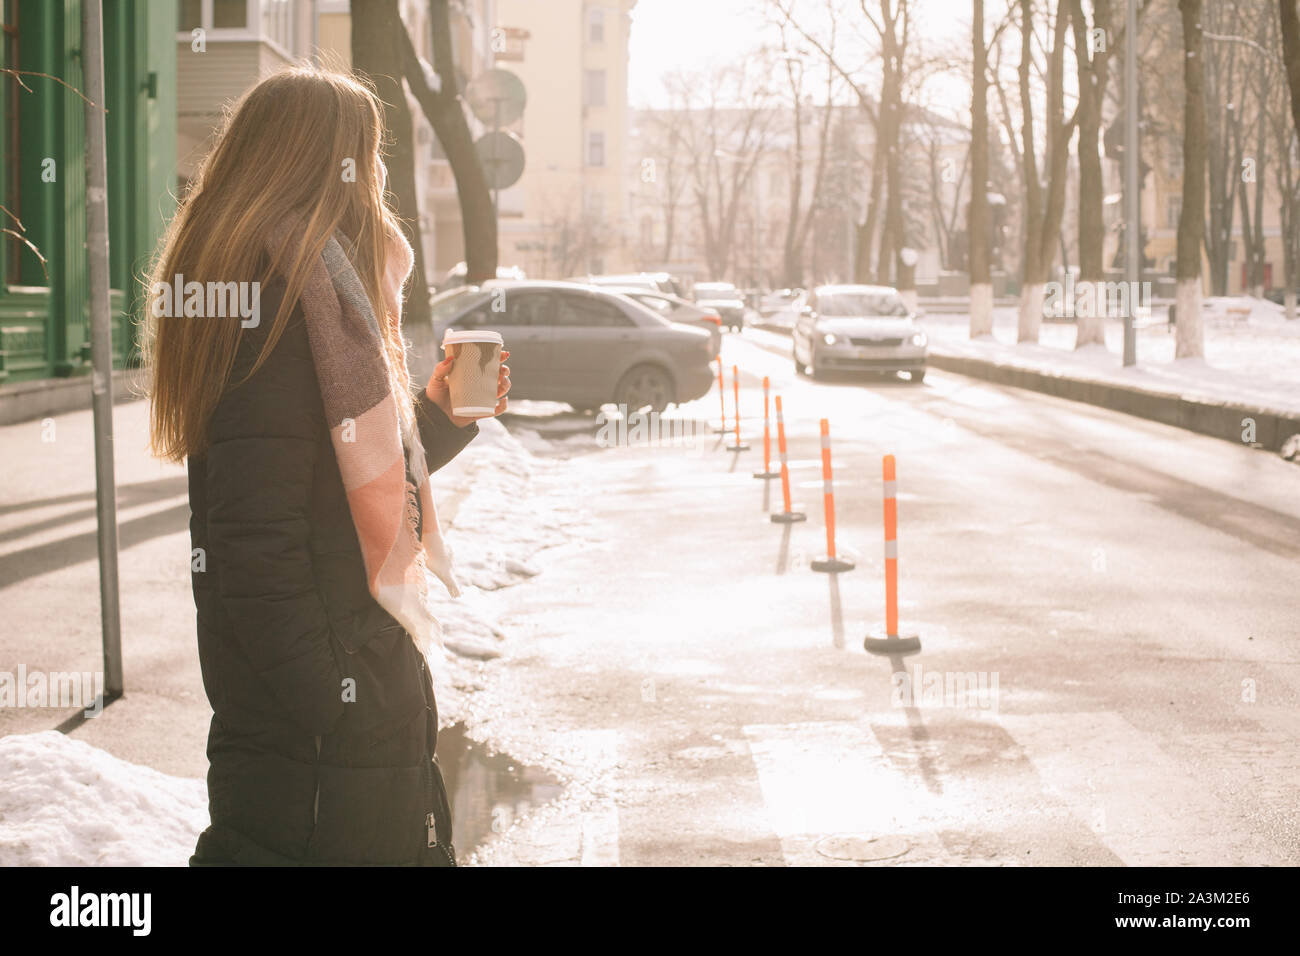 Mujer con vaso desechable en ropa de abrigo, cruzando las calles de la ciudad en invierno Foto de stock